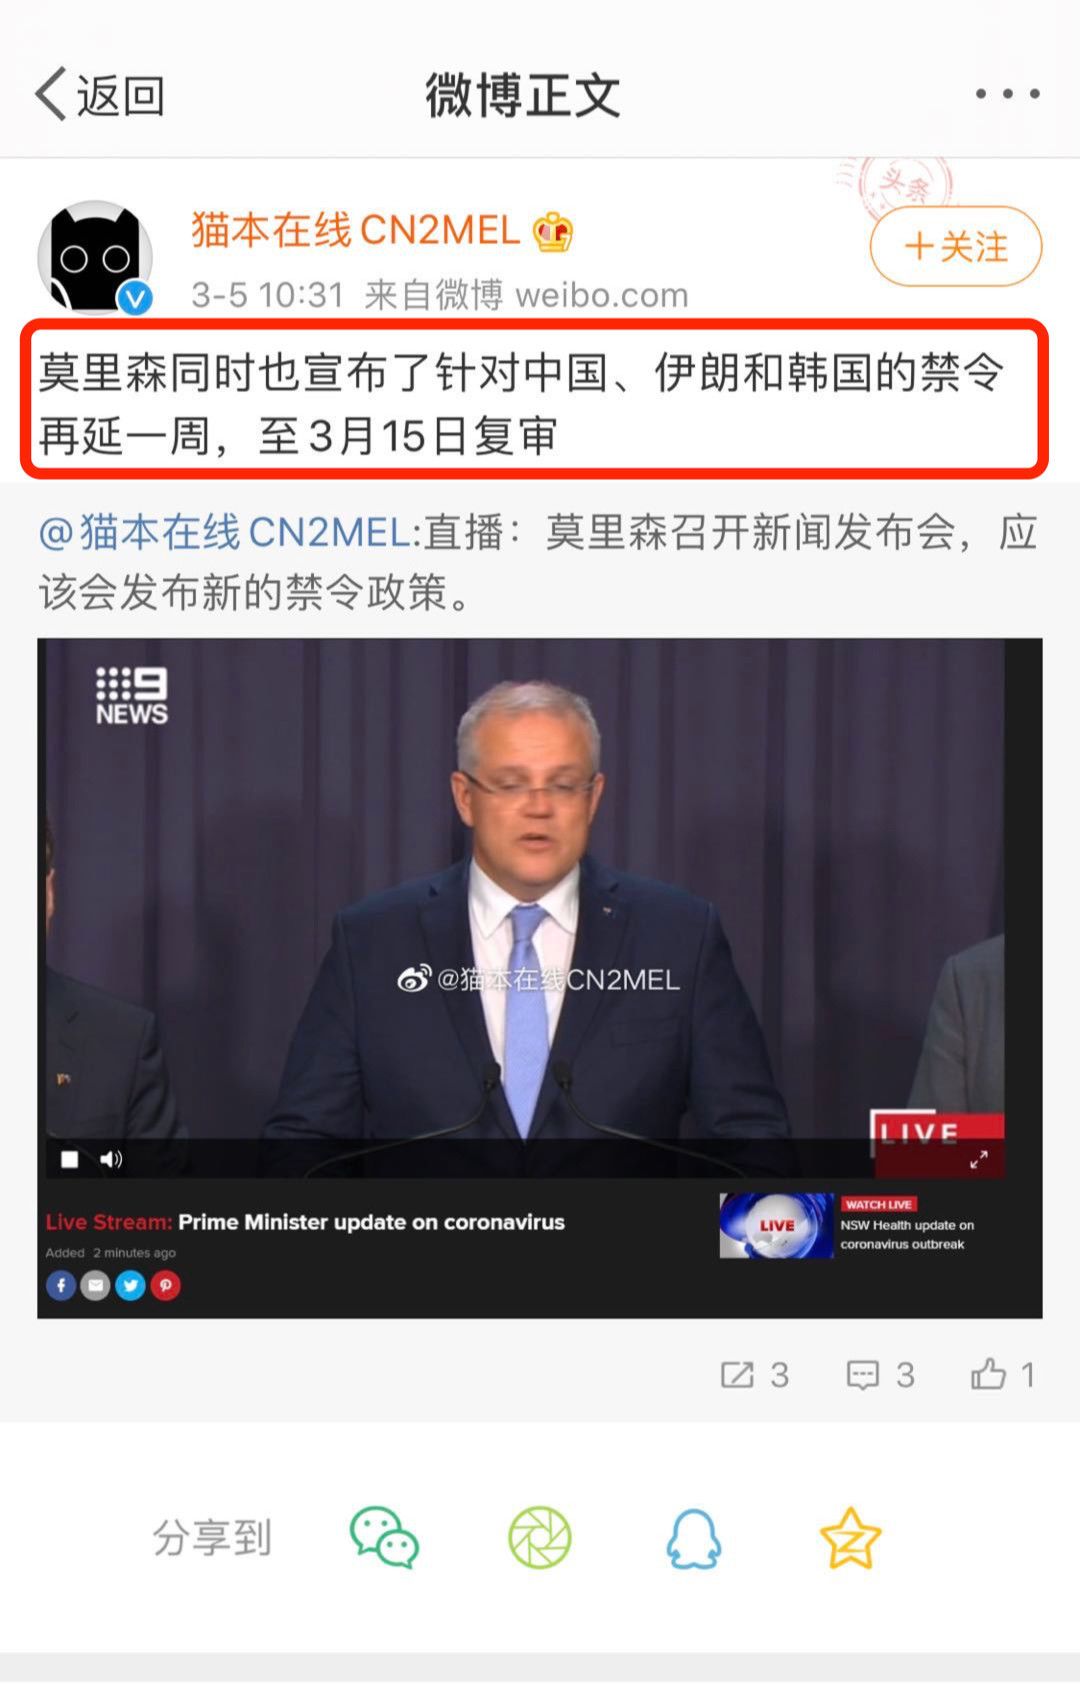 再延期！澳洲对中国的禁令再延长一周至3月15日！后续或再延期！